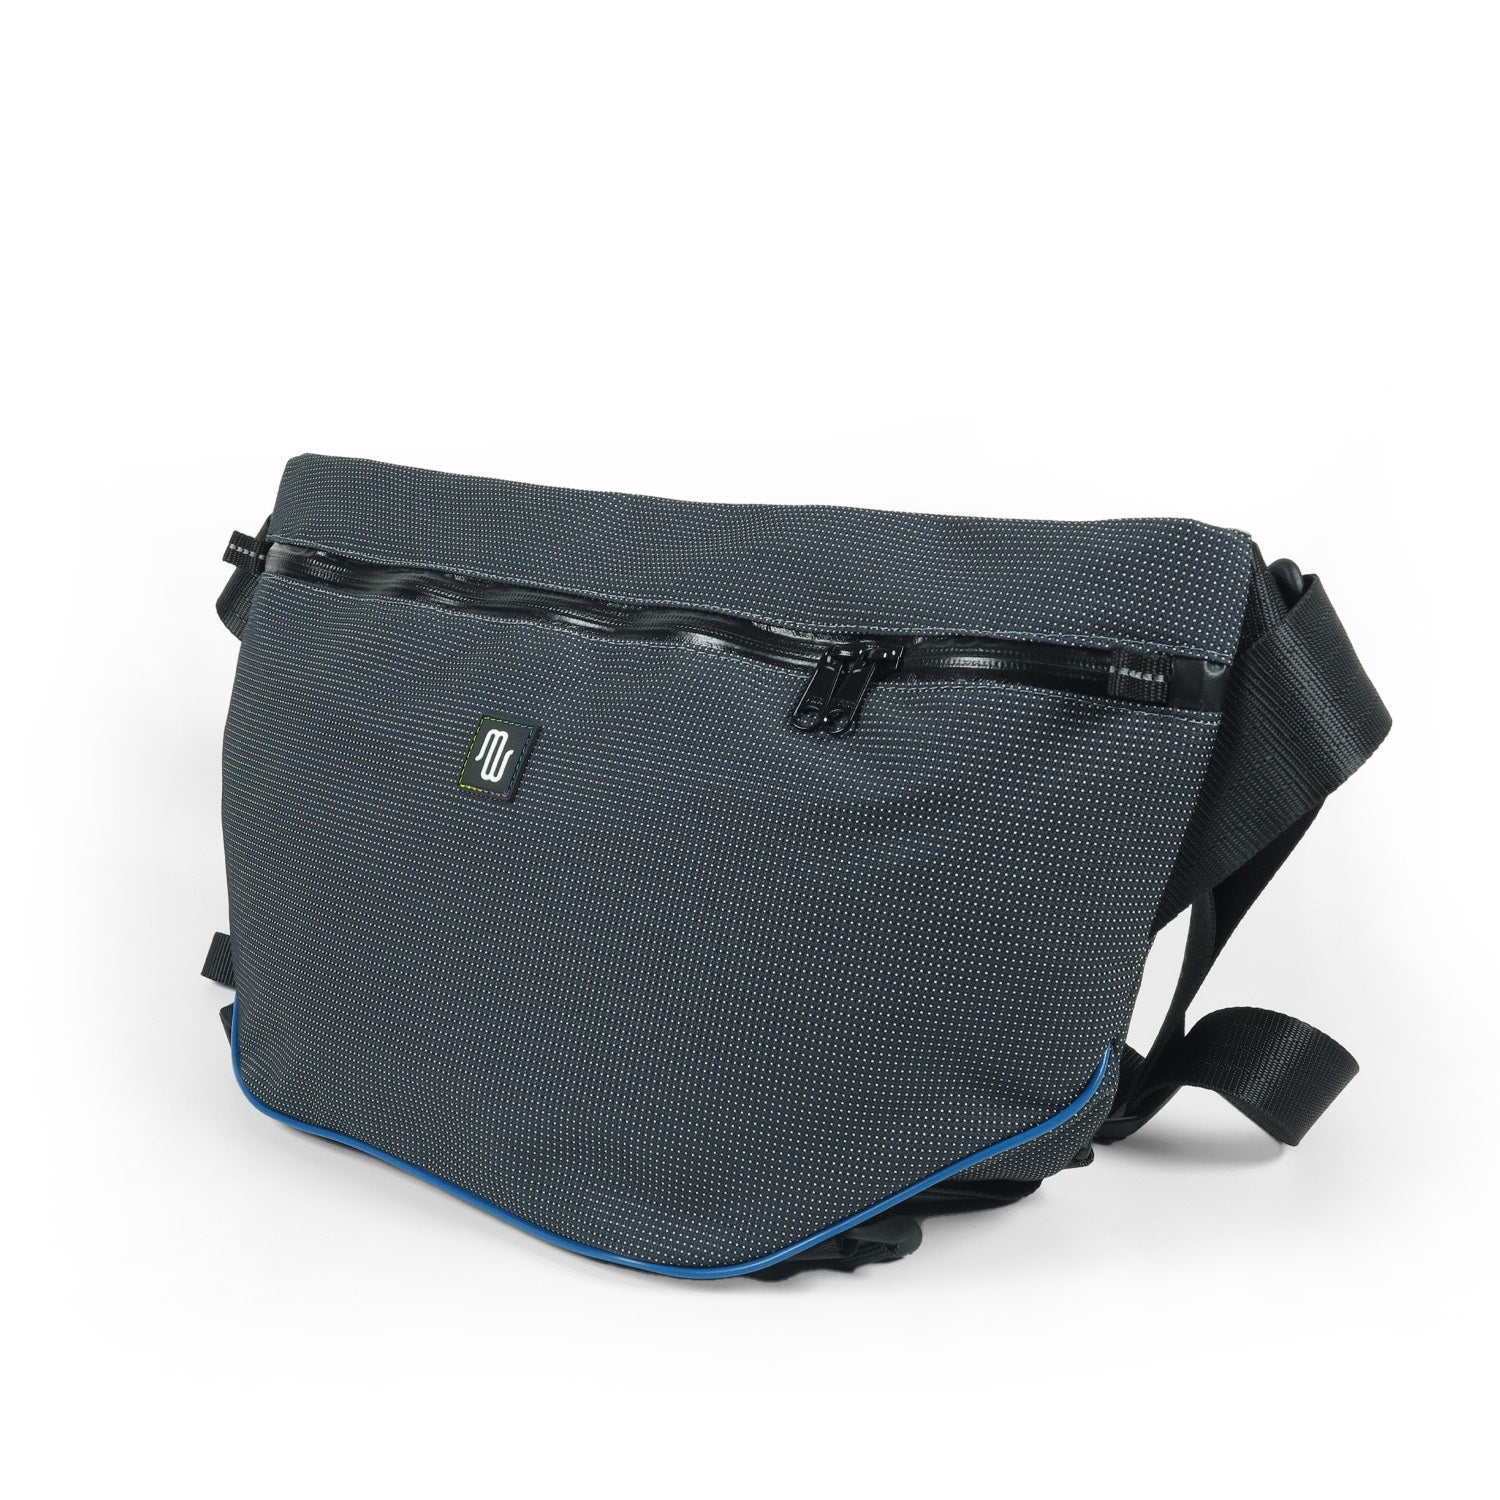 BOB No. 022 - Shoulder bag - medencebag